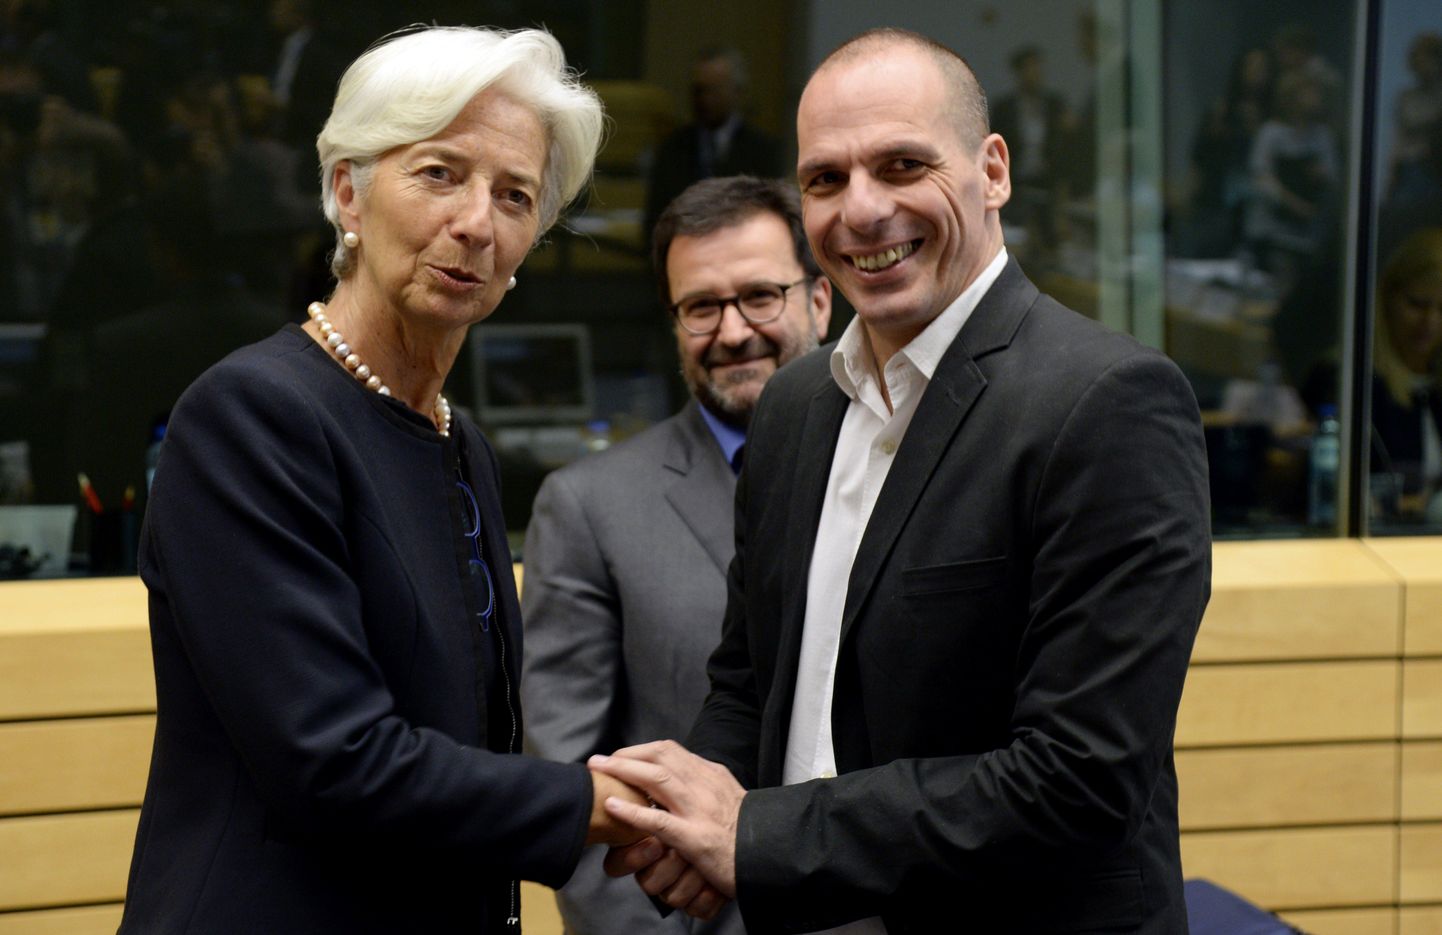 Kreeka rahandusminister Yanis Varoufakis (paremal) ja Rahvusvahelise Valuutafondi (IMF) juht Christine Lagardetäna täna eurogrupi nõupidamisel.